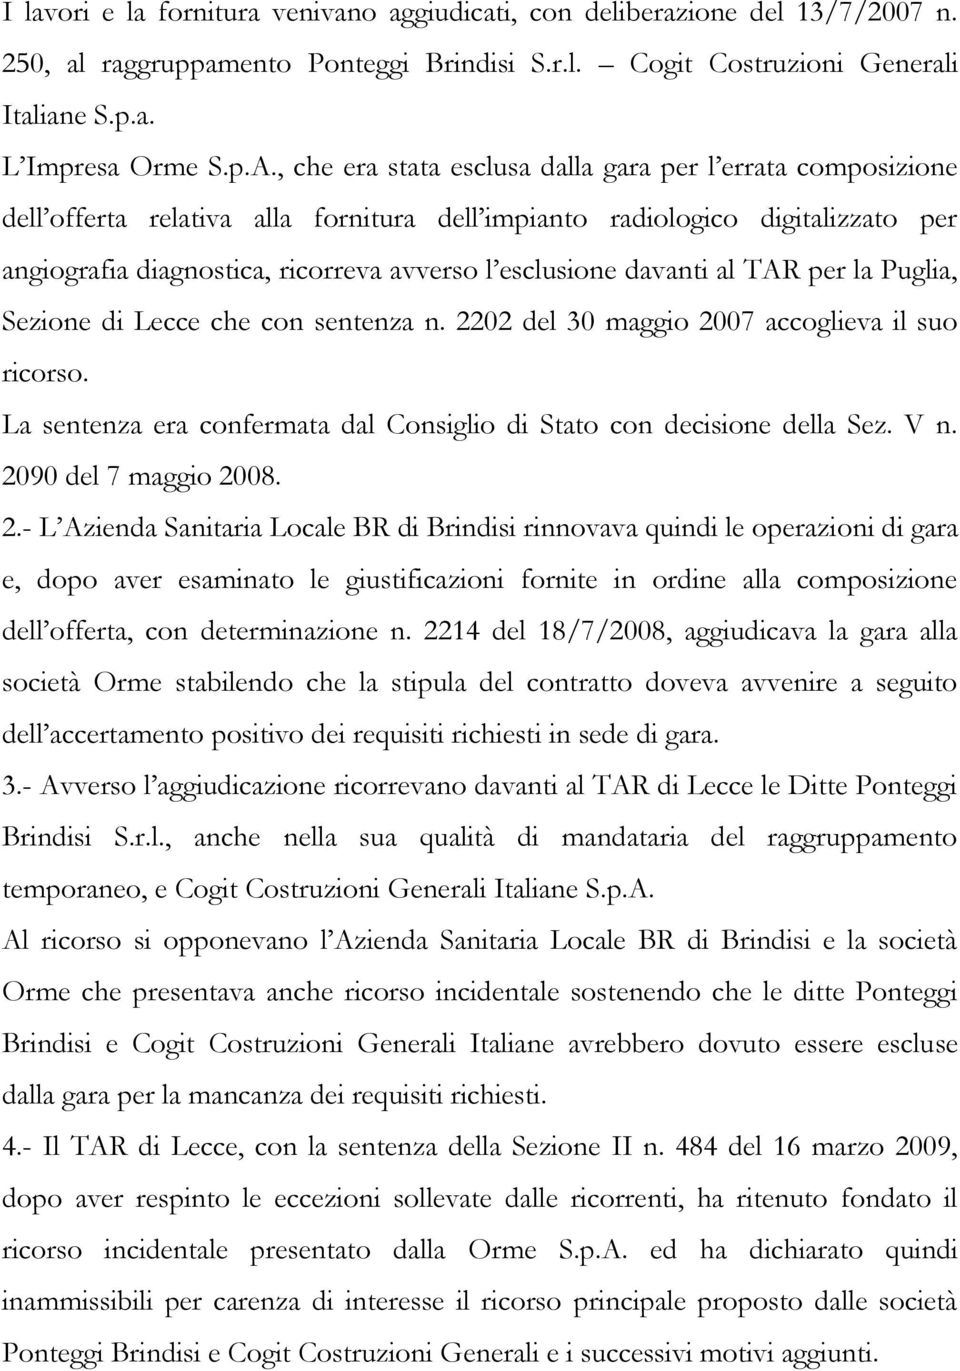 davanti al TAR per la Puglia, Sezione di Lecce che con sentenza n. 2202 del 30 maggio 2007 accoglieva il suo ricorso. La sentenza era confermata dal Consiglio di Stato con decisione della Sez. V n.